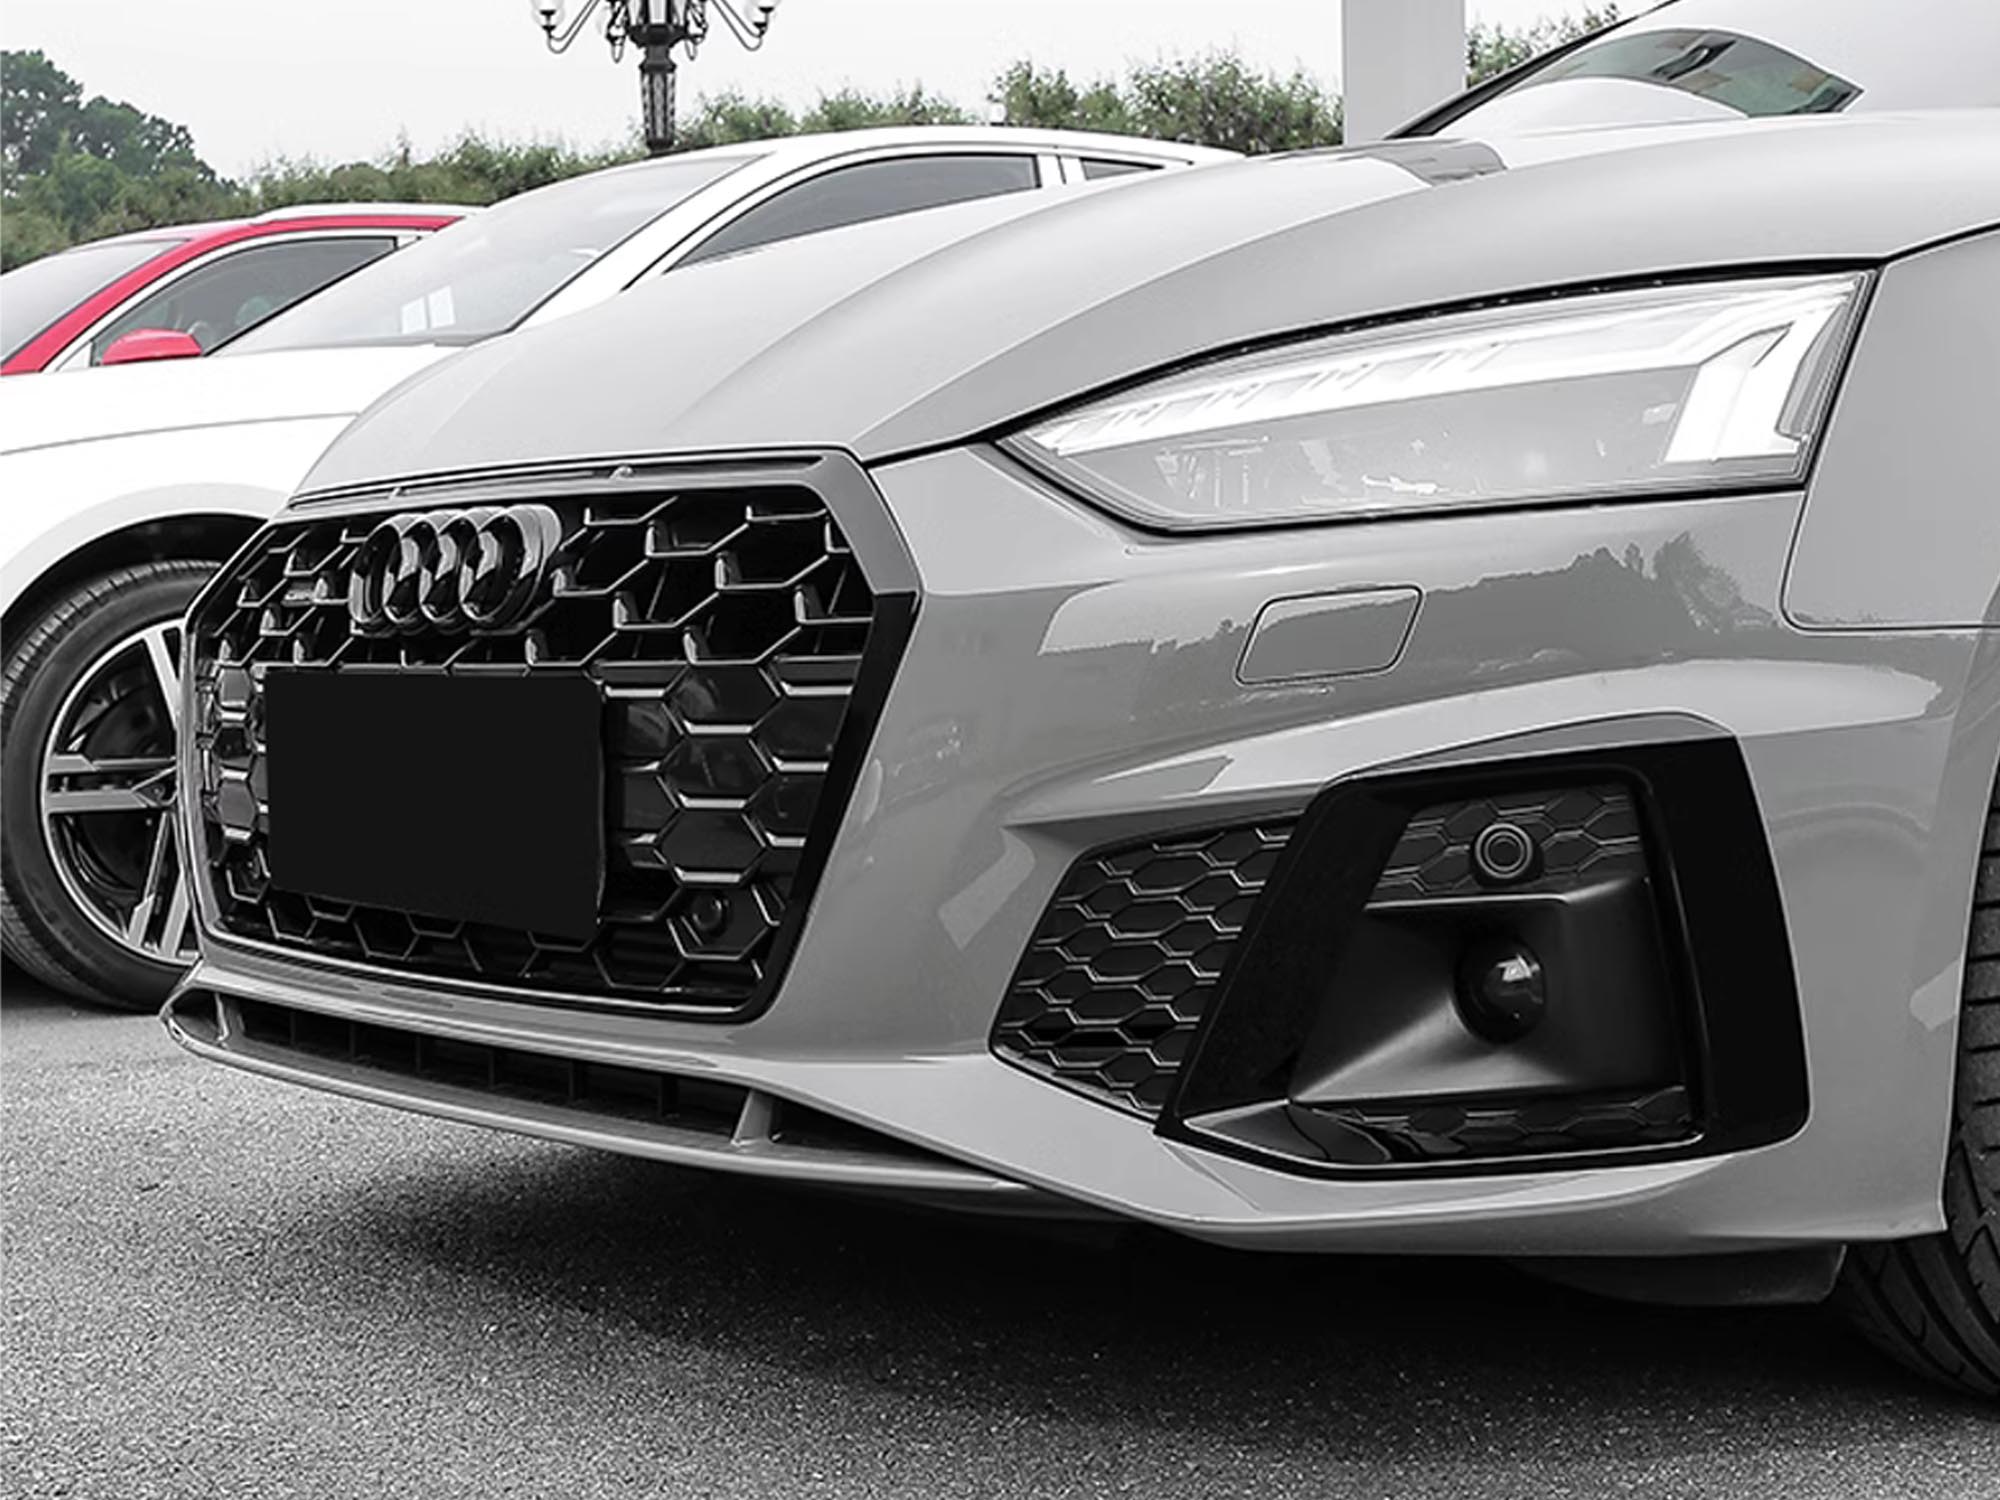 RS Look Nebelscheinwerfer Blenden für Audi A5 / S5 / S line - WWW